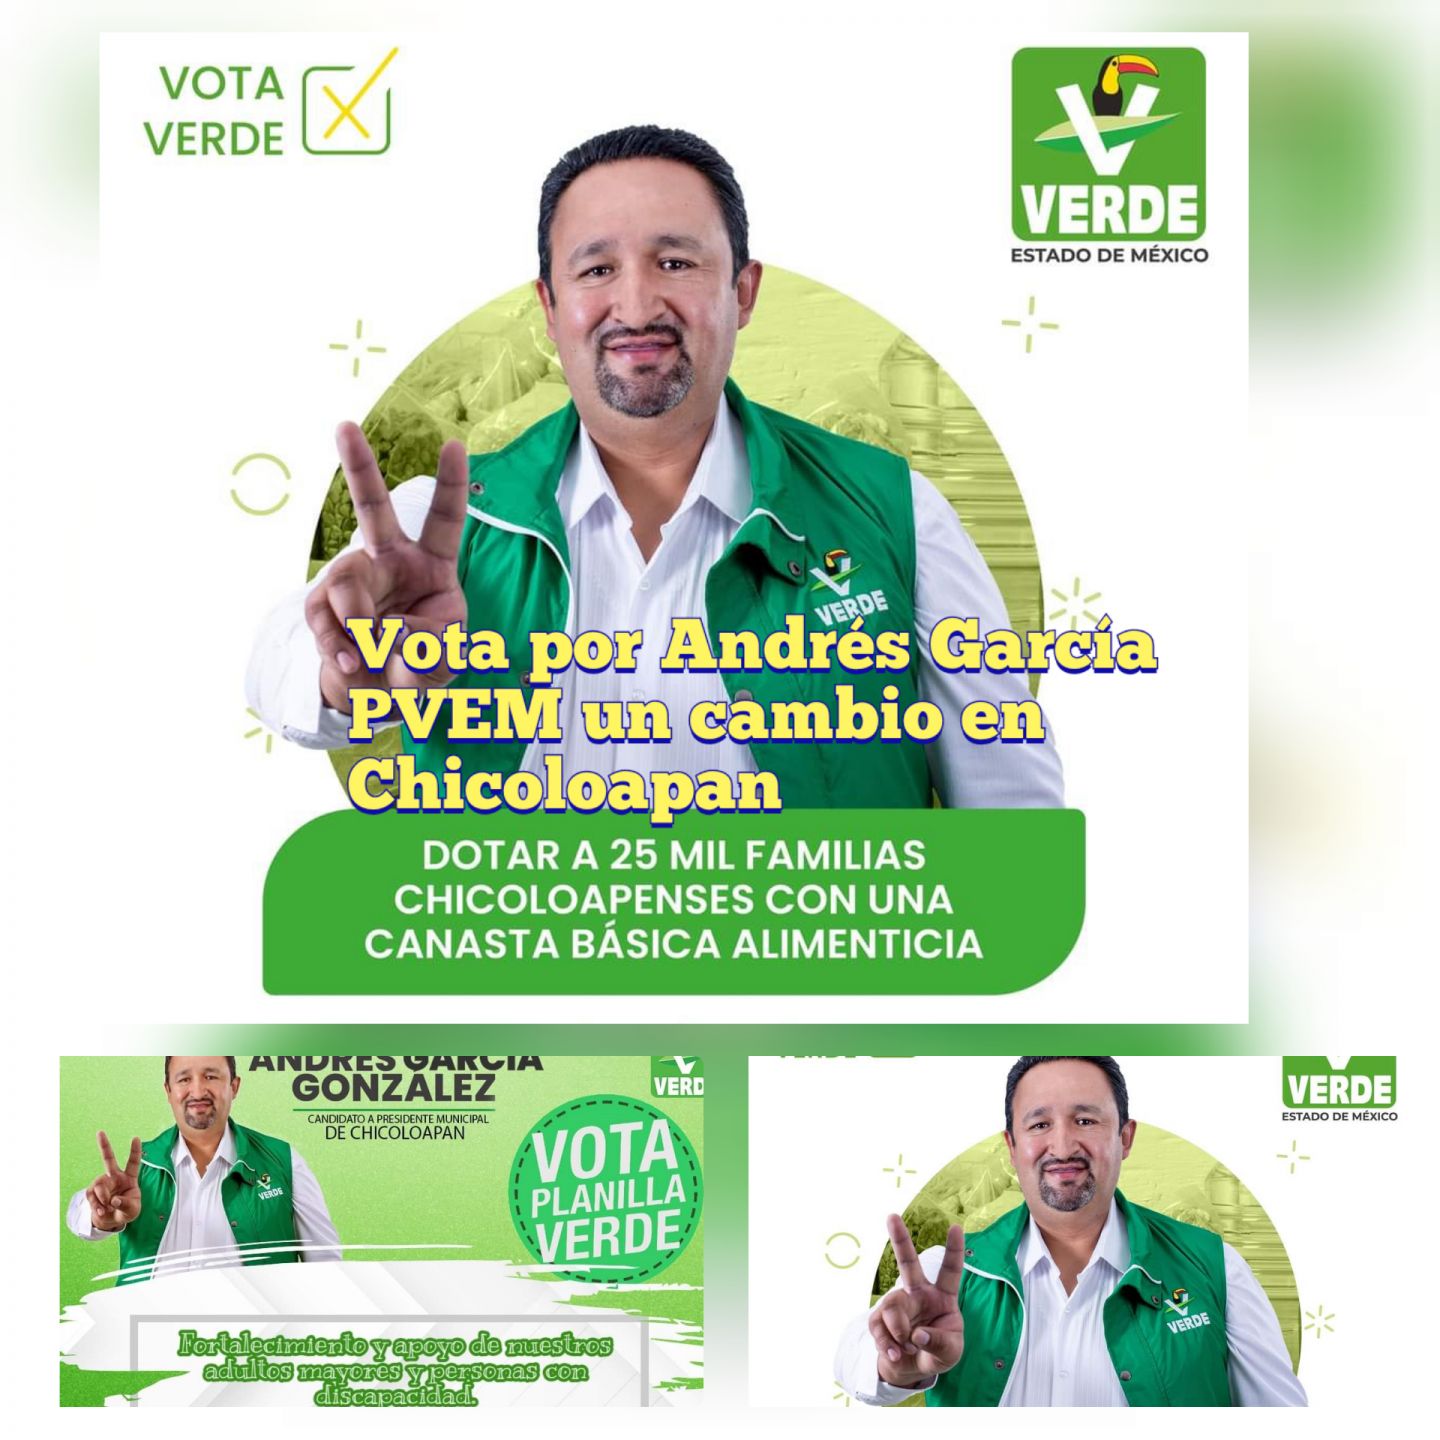 Pobladores votarán el 6 de Junio por   Andrés García candidato a la presidencia municipal de Chicoloapan PVEM 